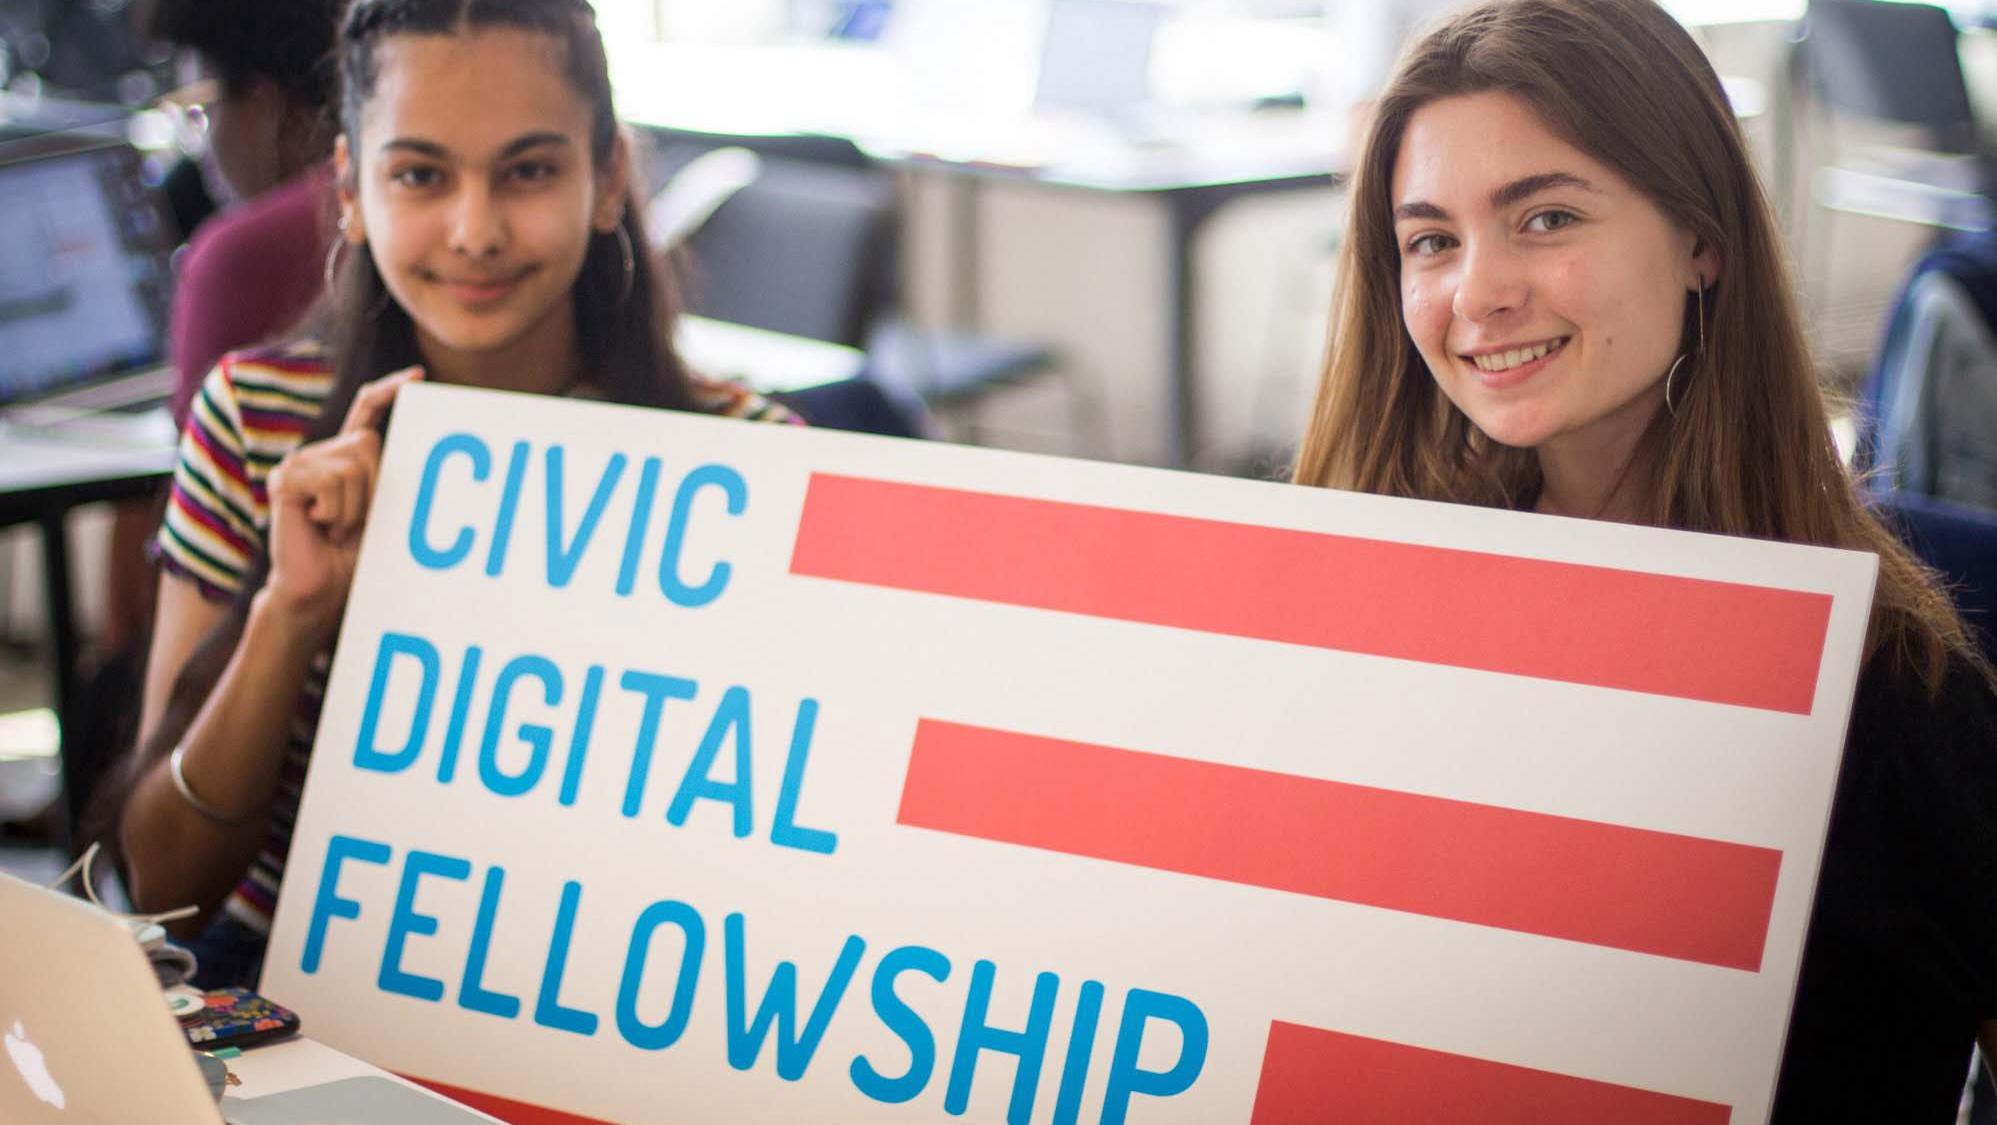 civic digital fellows